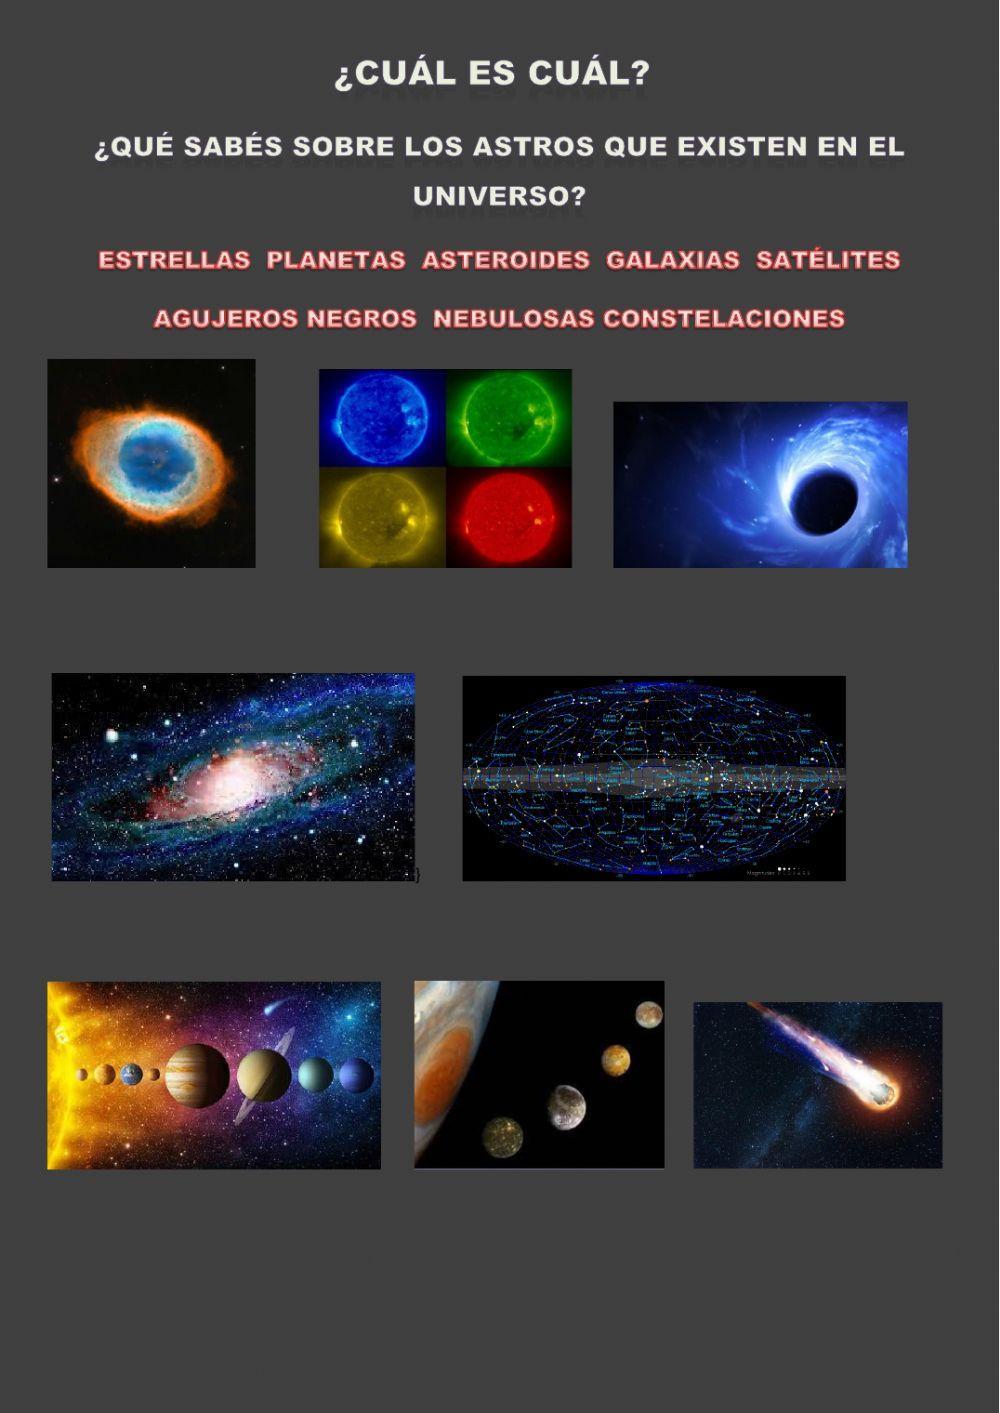 Los astros del universo